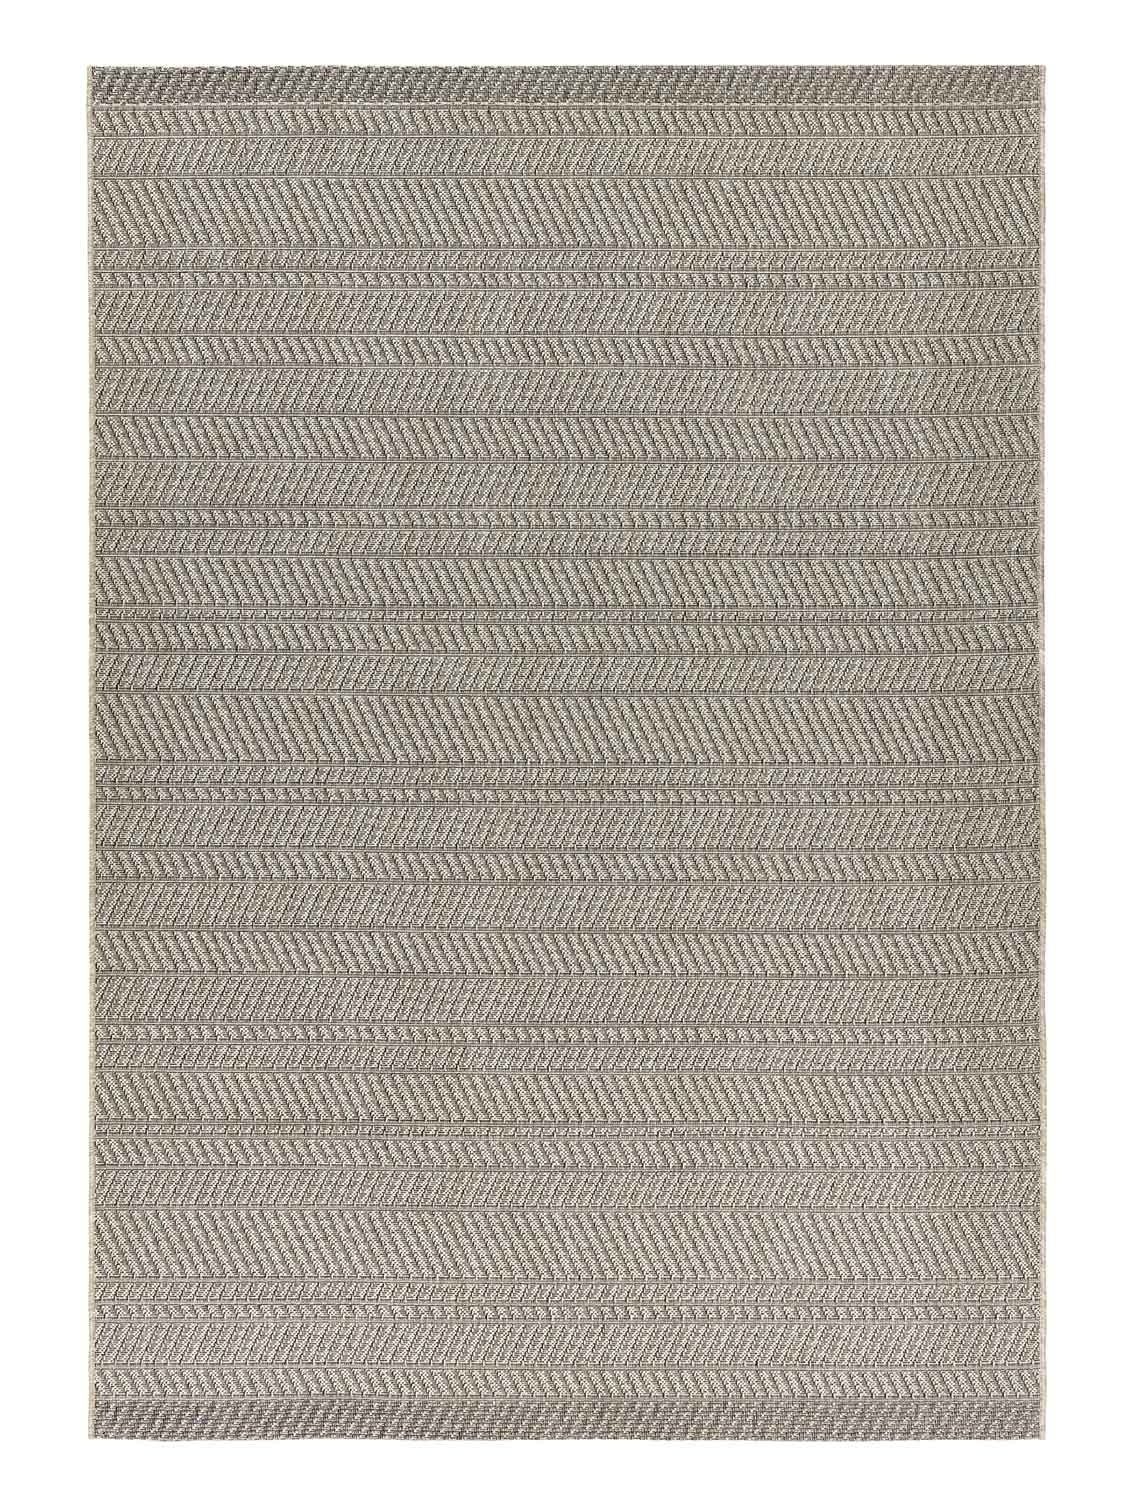 Outdoorteppich LINEO, Beige, Schwarz, Kunstfaser, 200 x 290 cm, rechteckig, UV-beständig, Wasserabweisend